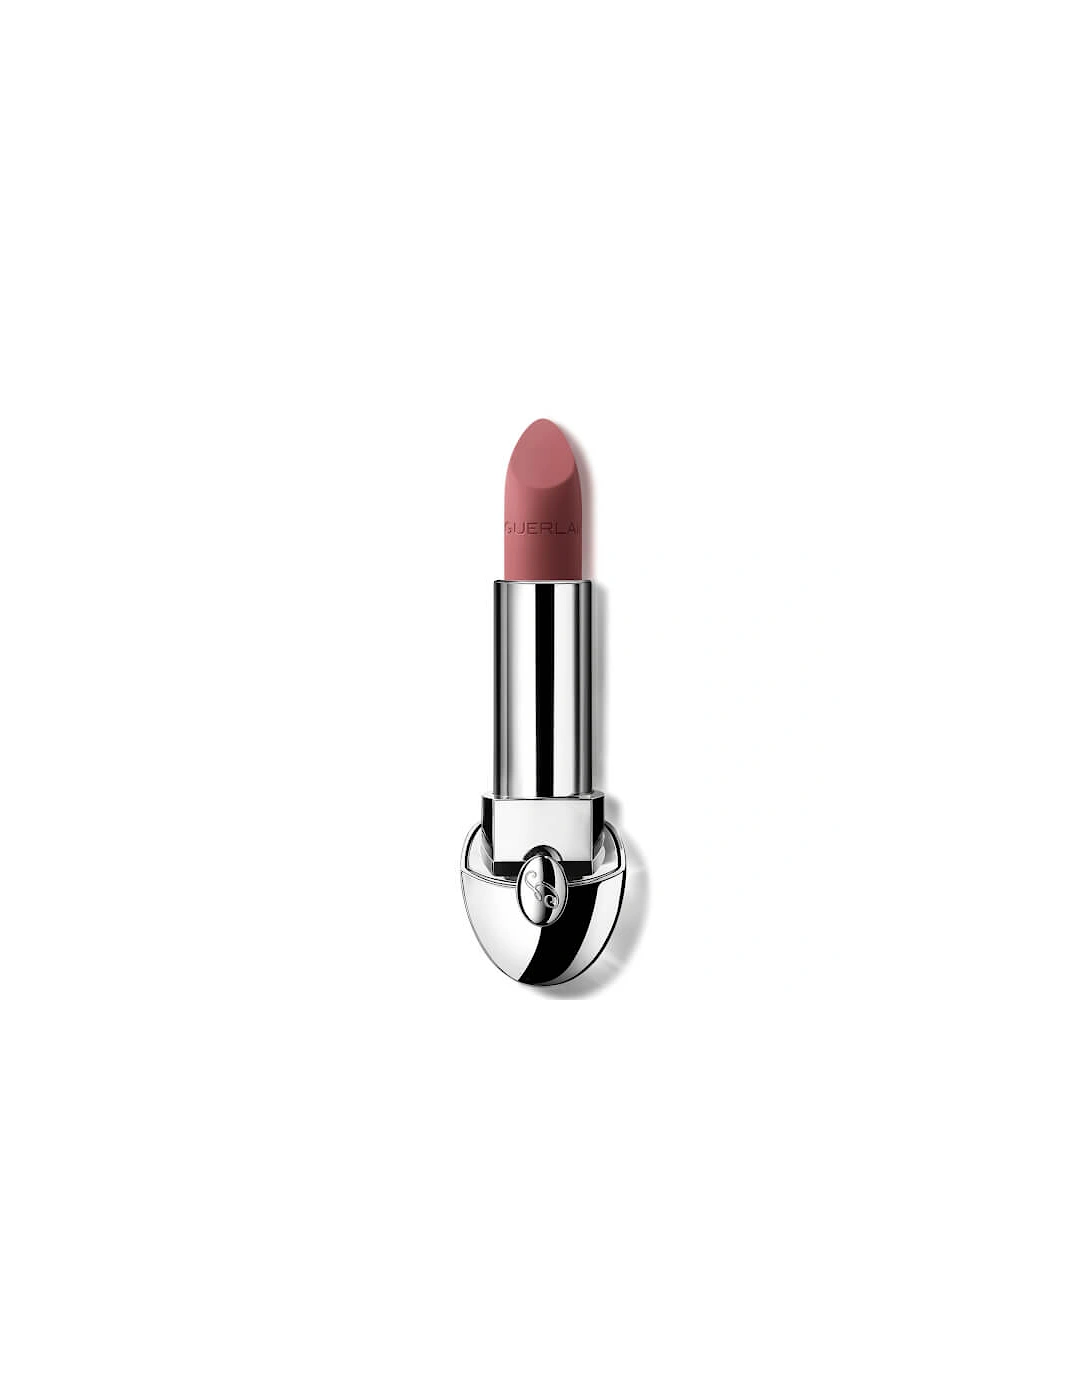 Rouge G Luxurious Velvet 16 Hour Wear High-Pigmentation Velvet Matte Lipstick - 530 Blush Beige, 2 of 1